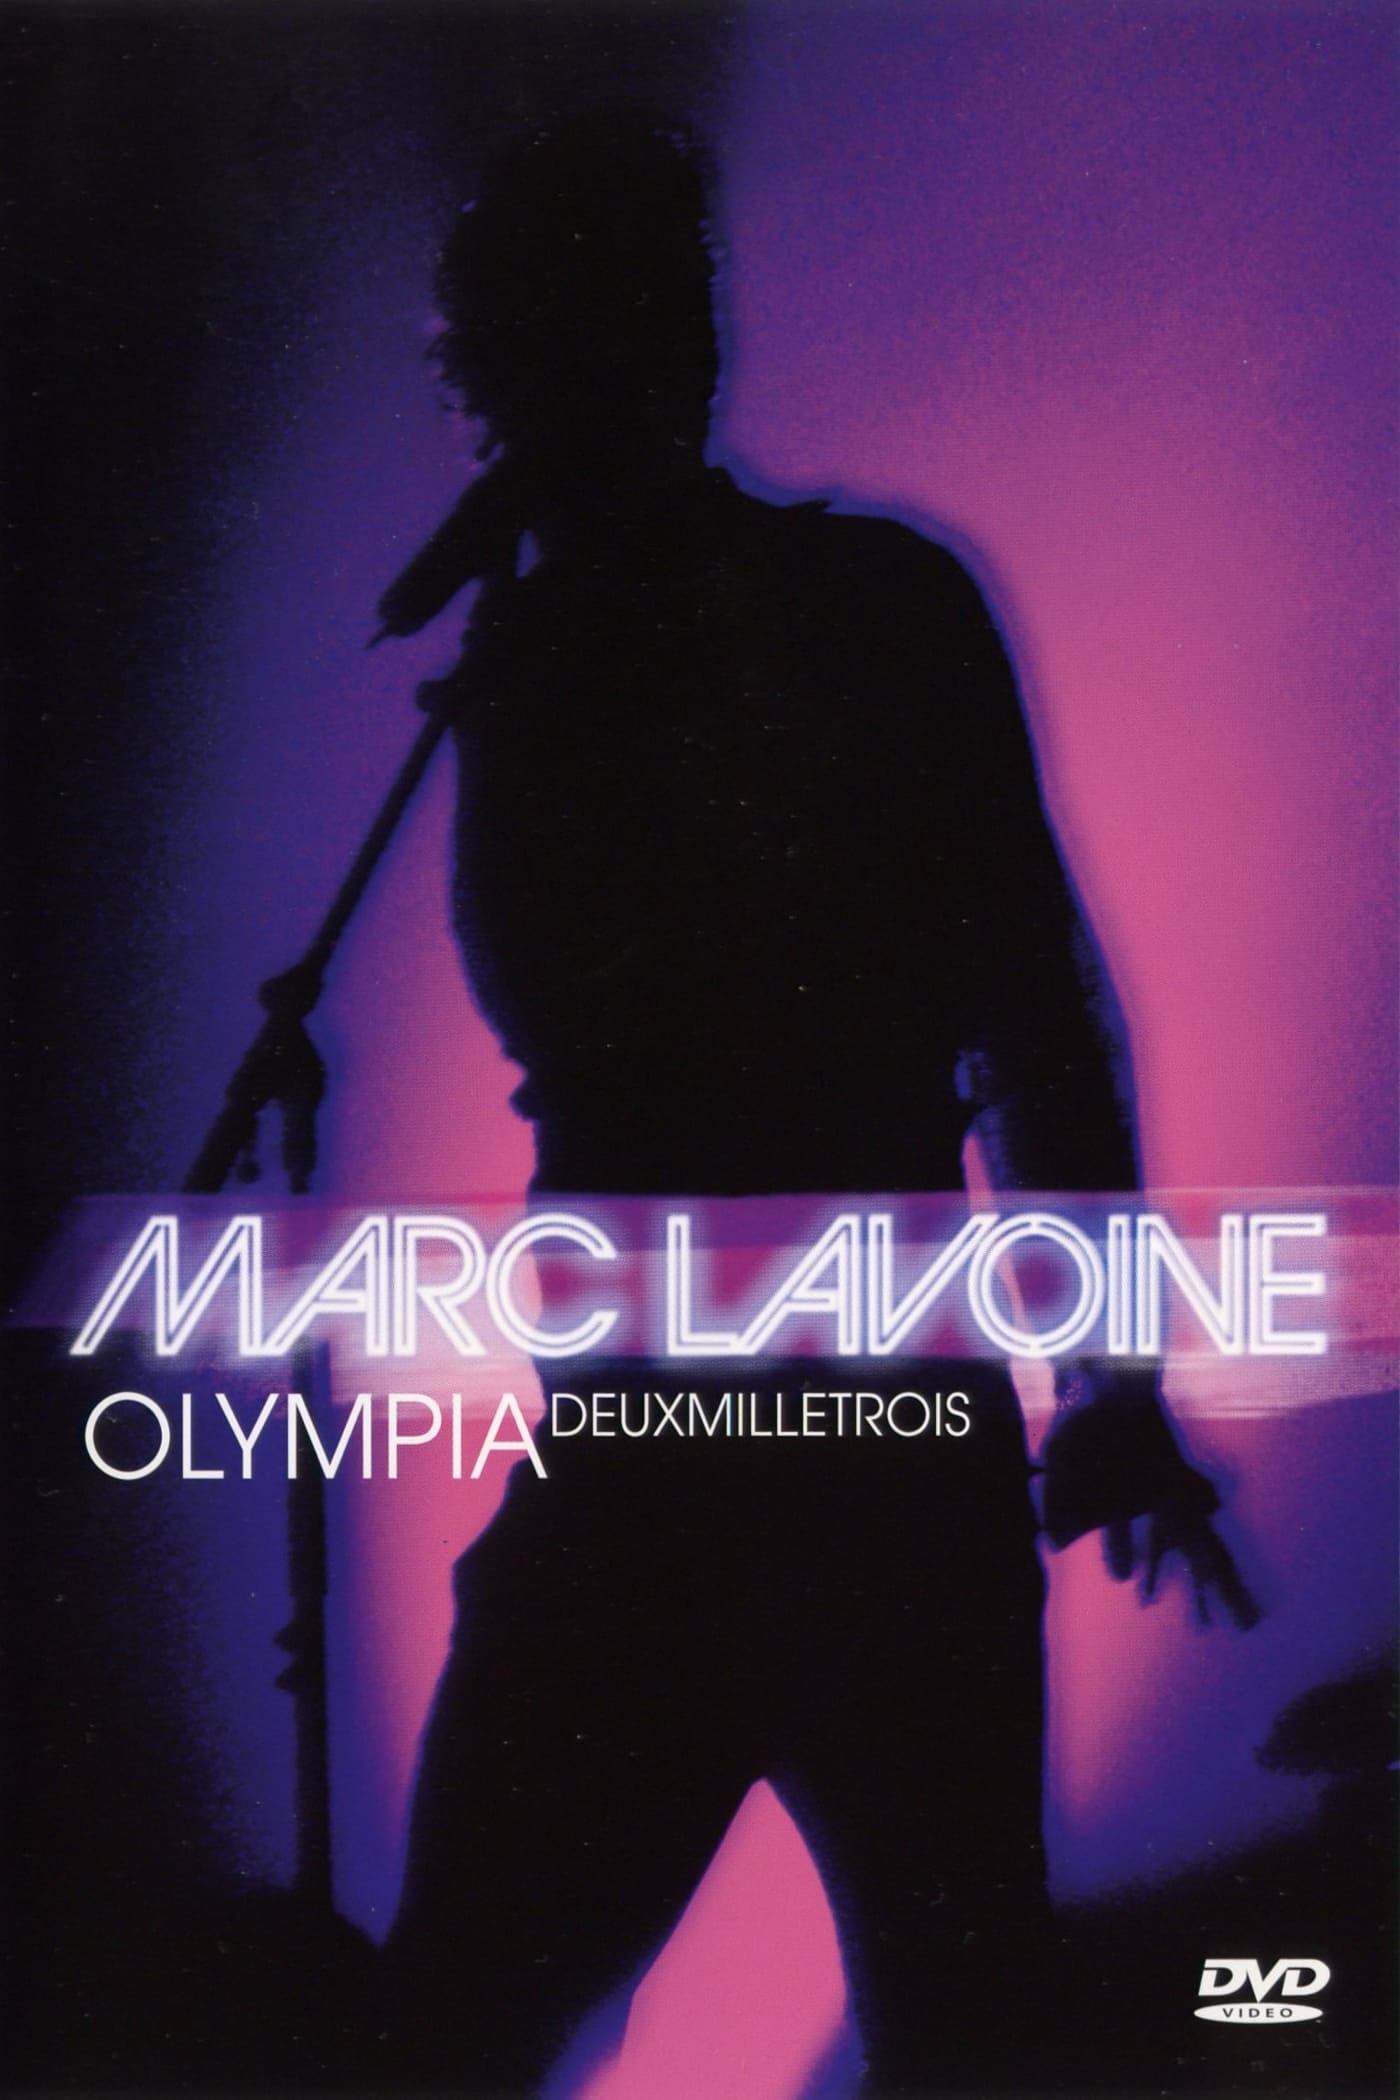 Marc Lavoine : Olympia deux mille trois